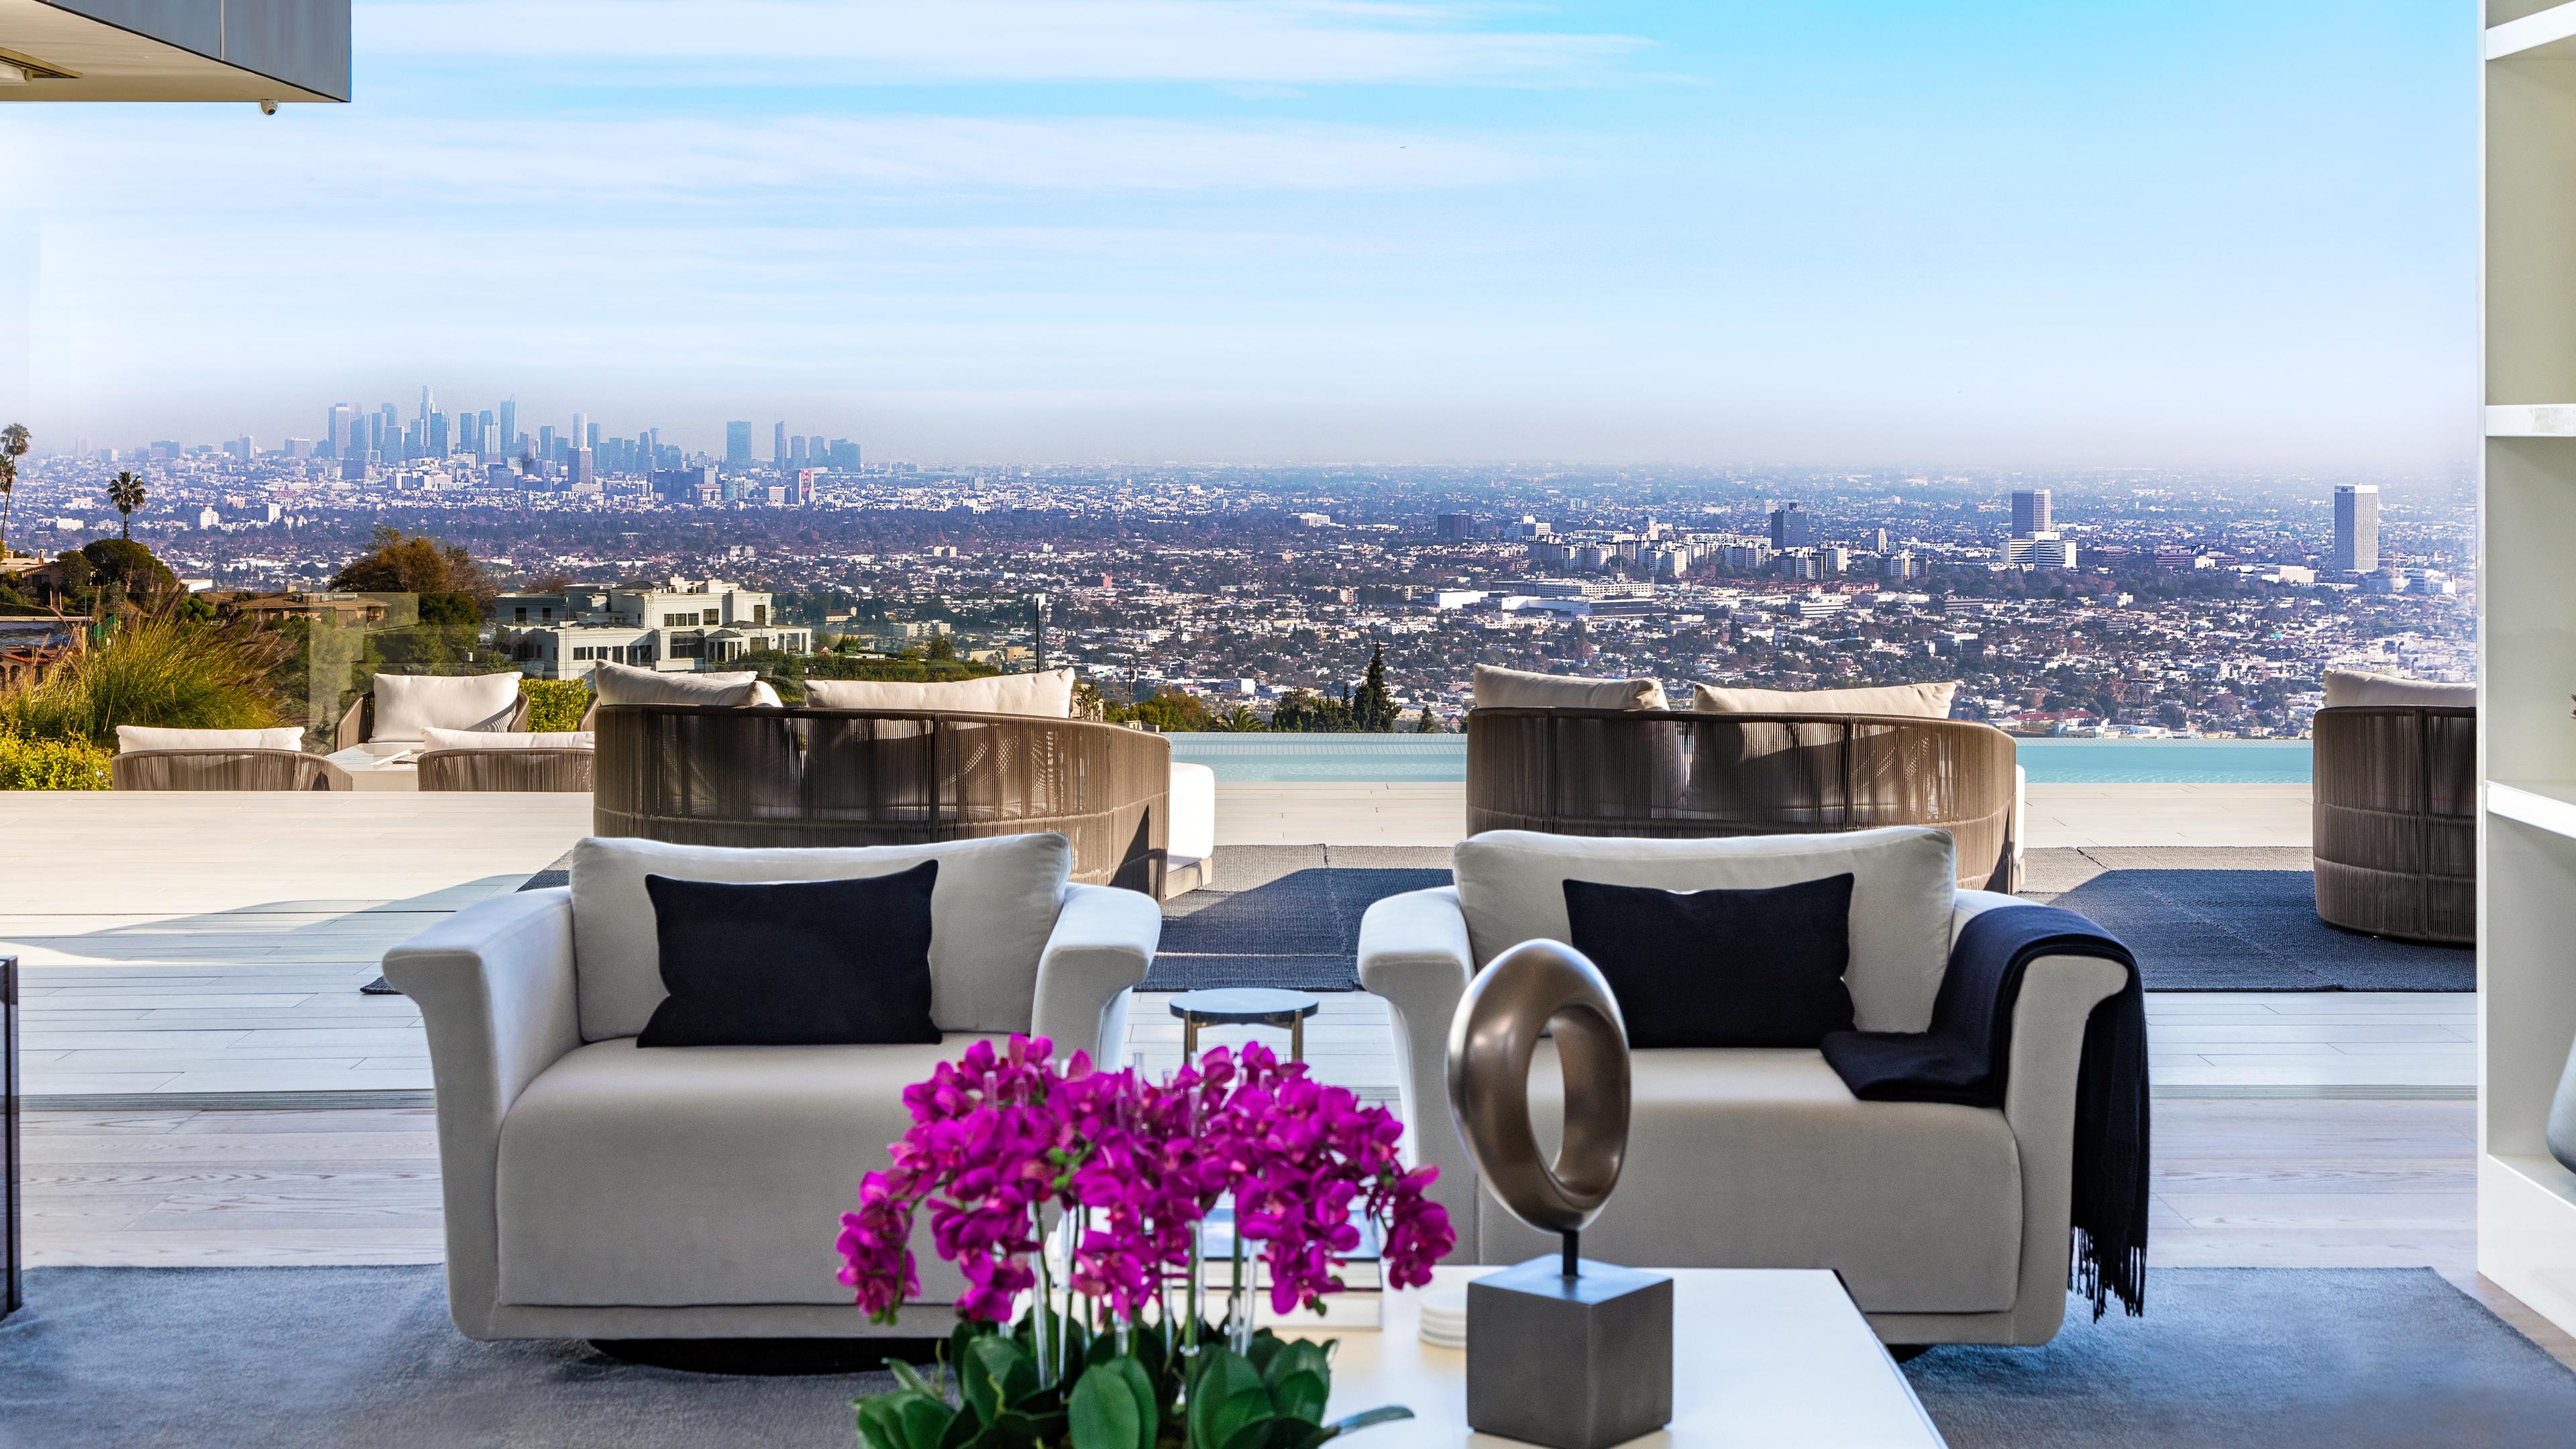 Der Ausblick von der Terrasse einer Luxusvilla in Los Angeles.